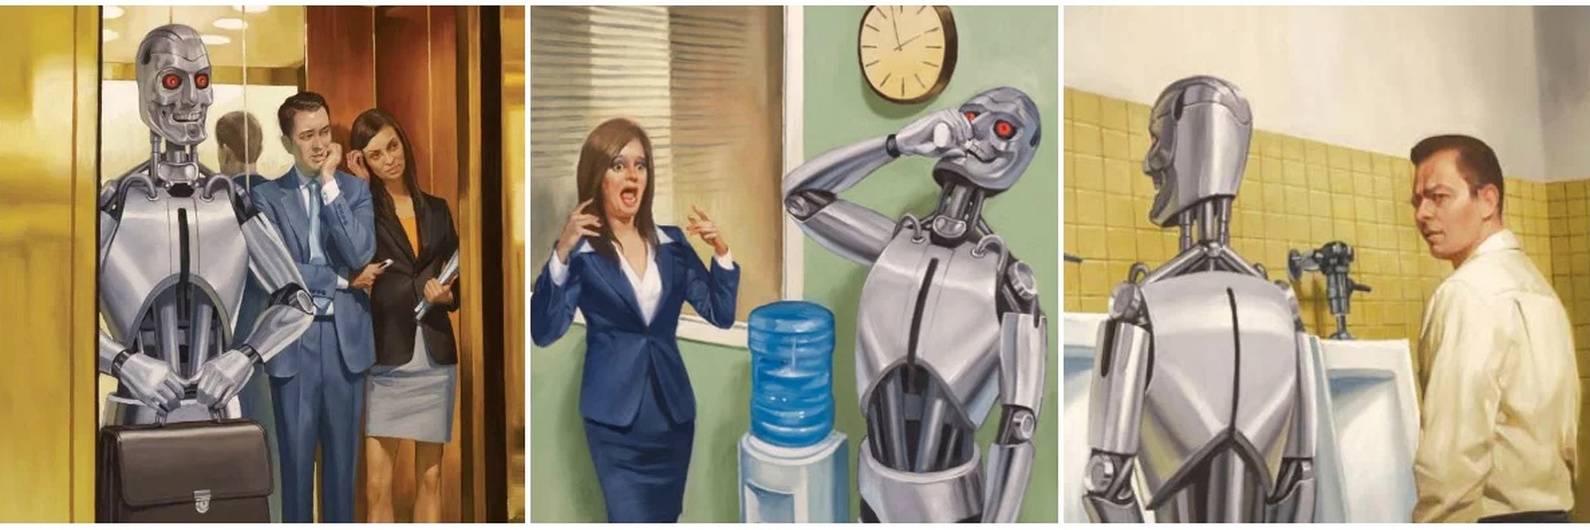 Люди вымерли остались роботы. Роботы вместо людей. Превращение человека в робота. Роботы заменят людей. Искусственный интеллект против человека.